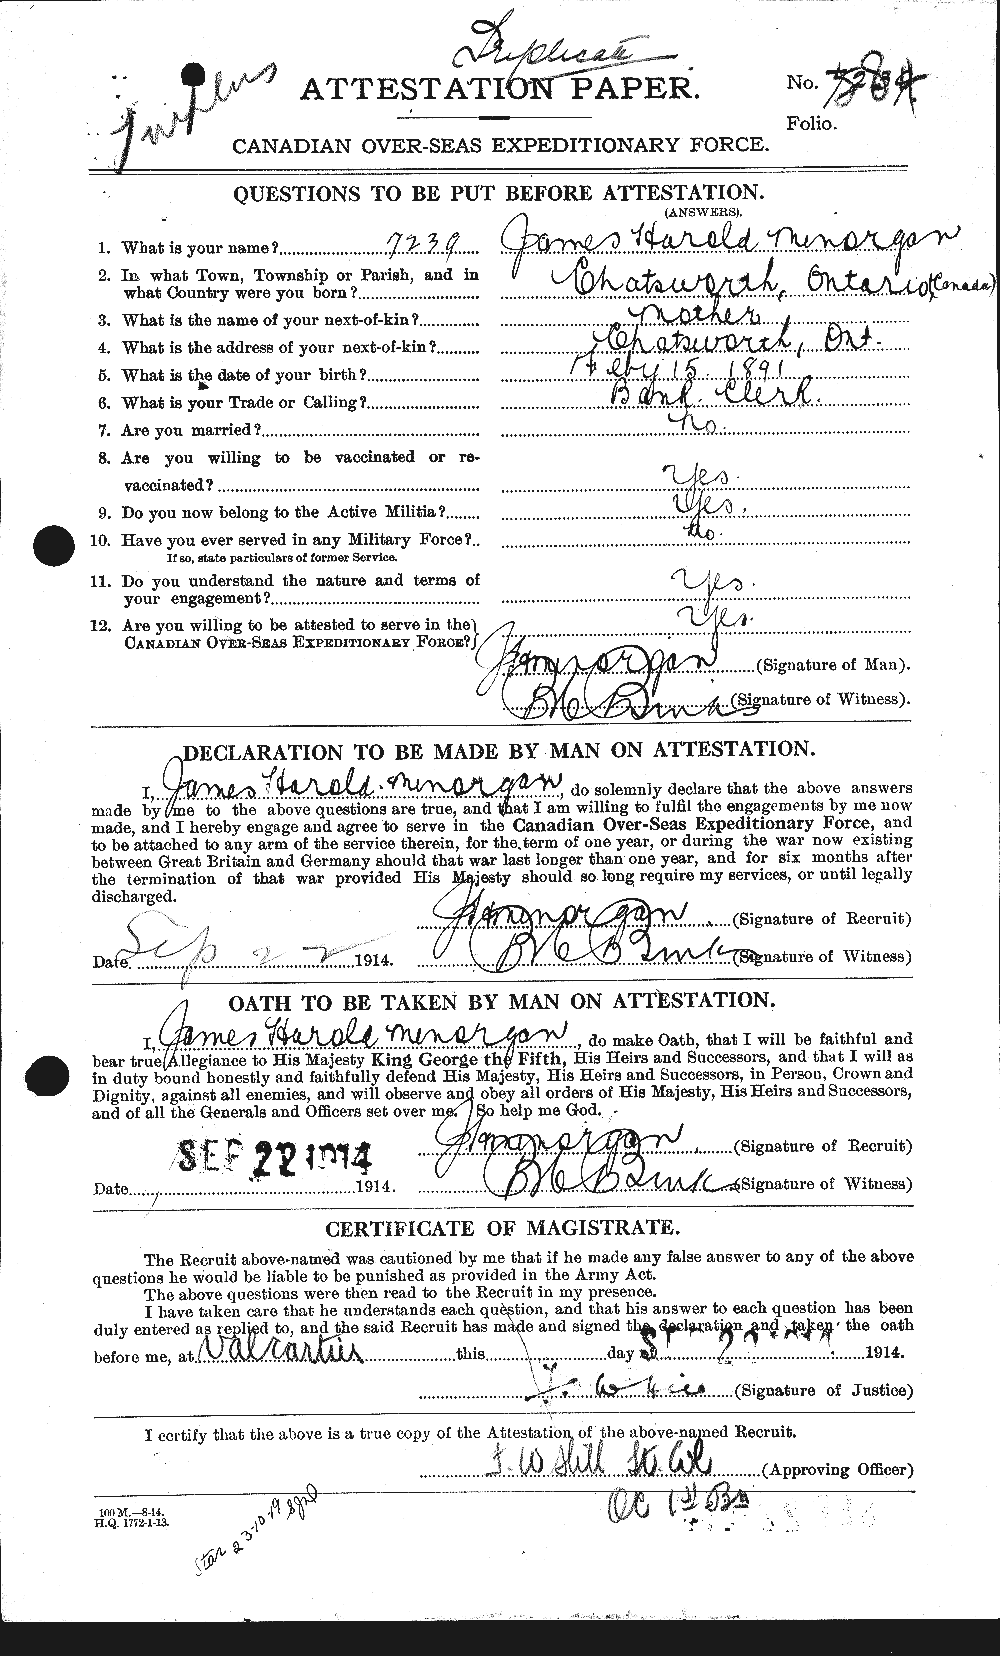 Dossiers du Personnel de la Première Guerre mondiale - CEC 500994a